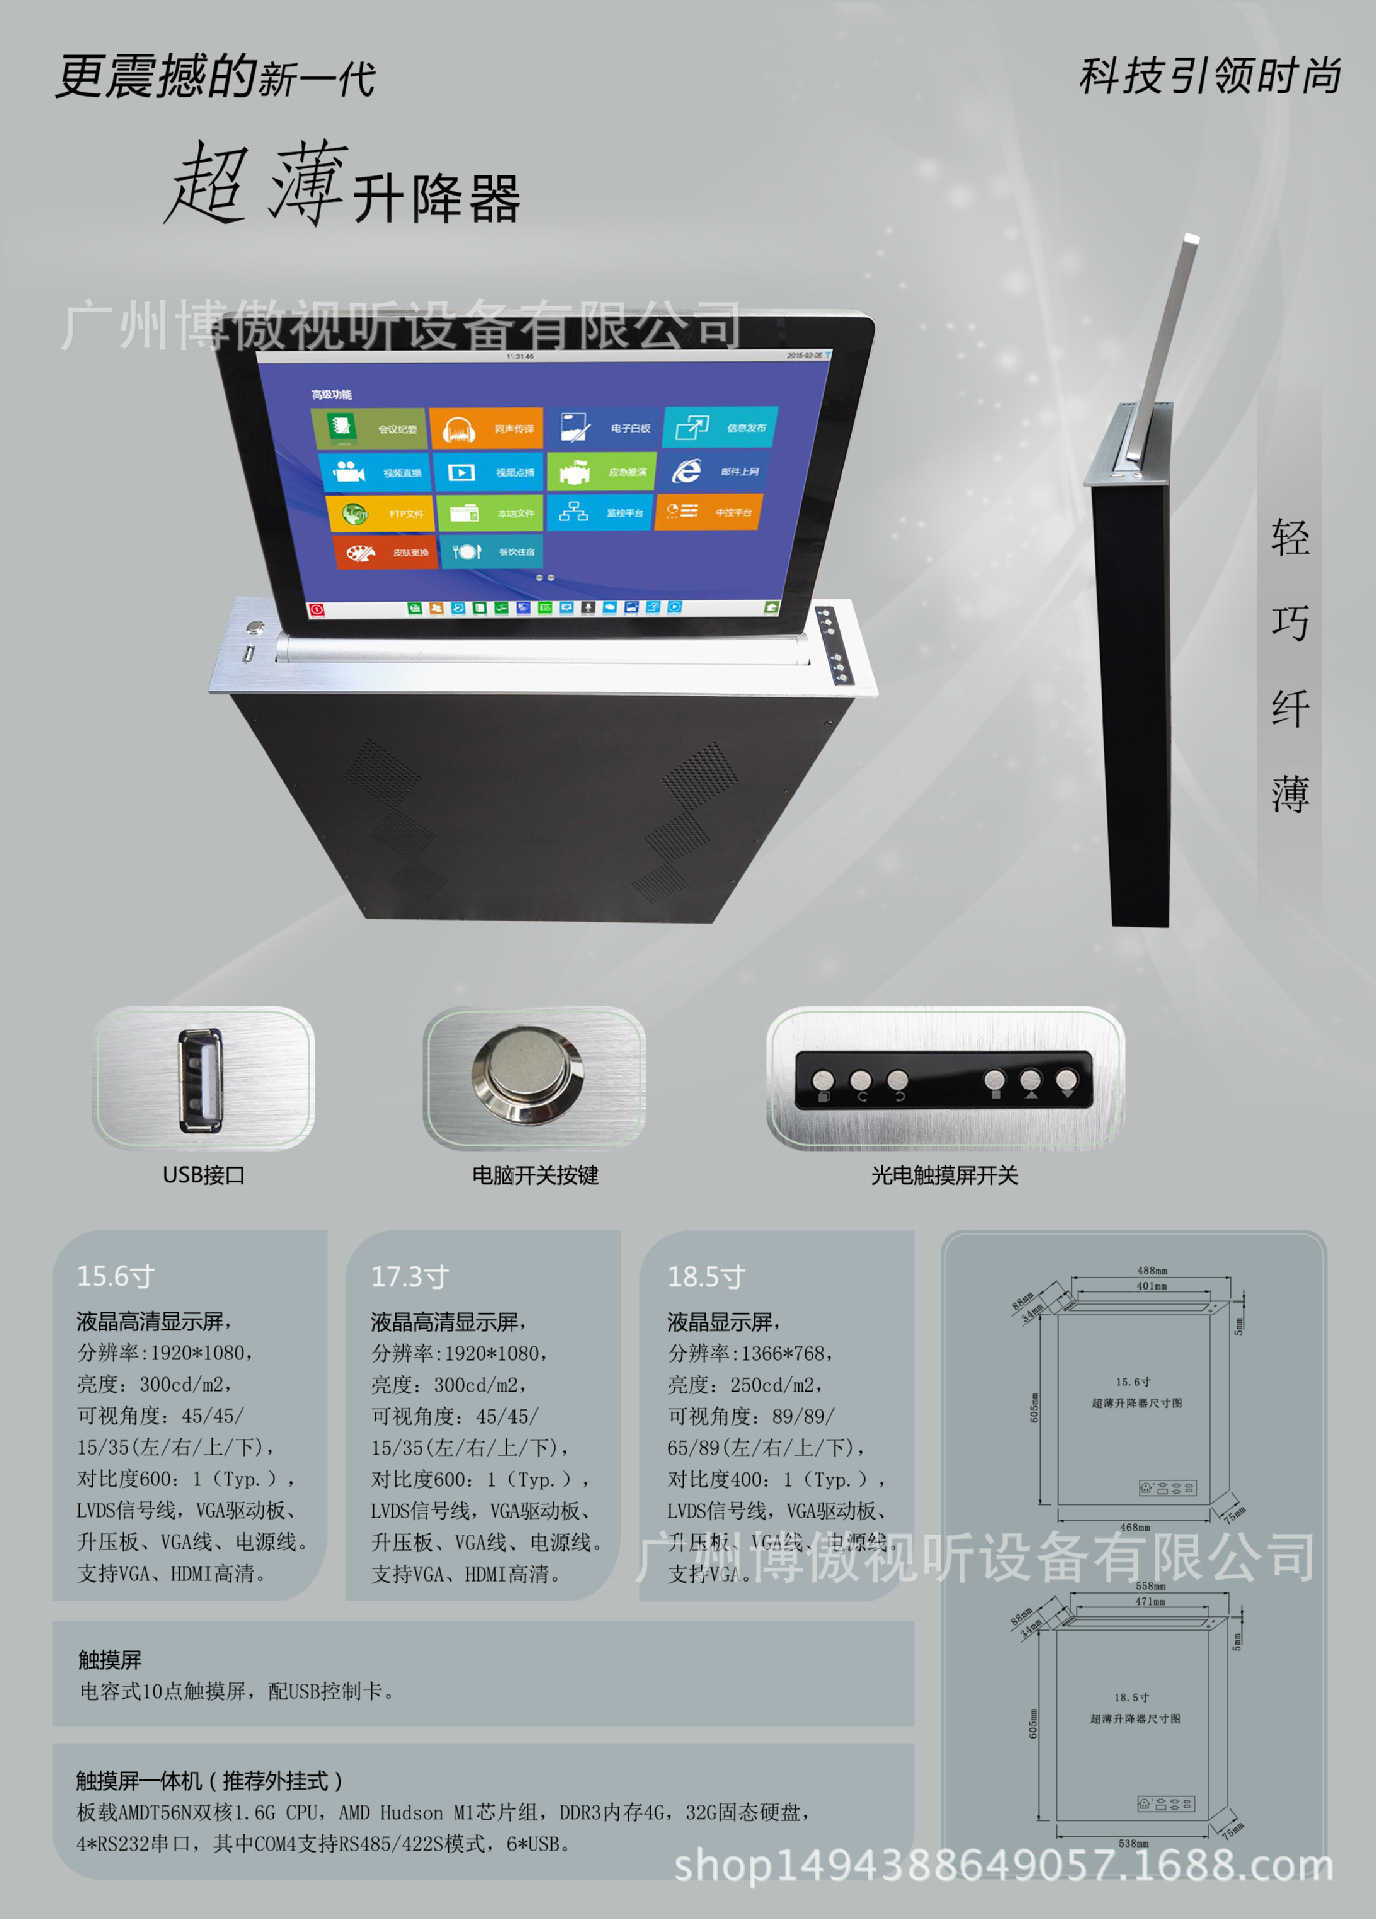 Ультратонкое устройство для подъема экрана 15,6 дюйма-21,5 дюйма, безбумажная система конференций, система аудио и видео конференций.